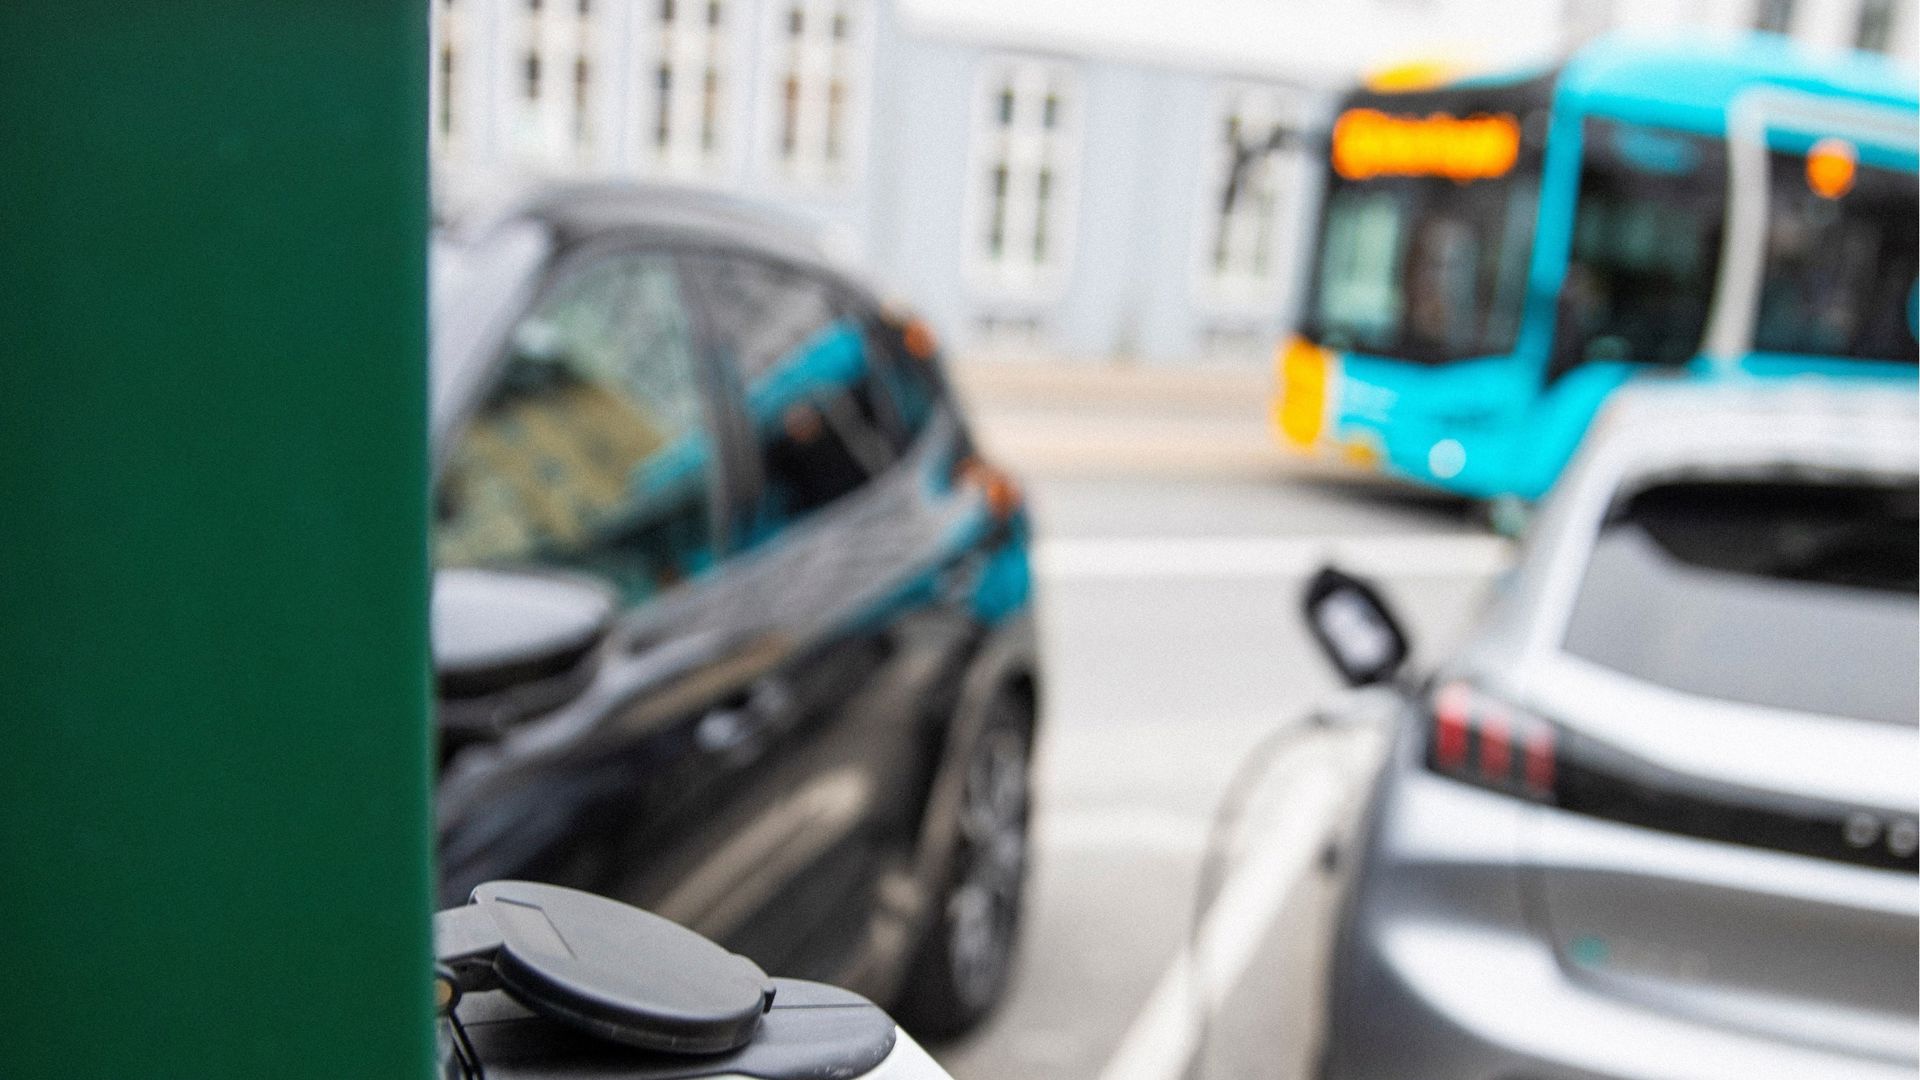 I forgrunden ses et stik til en el-bil i en grøn ladesøjle. I baggrunde en bus og to prakerede biler.